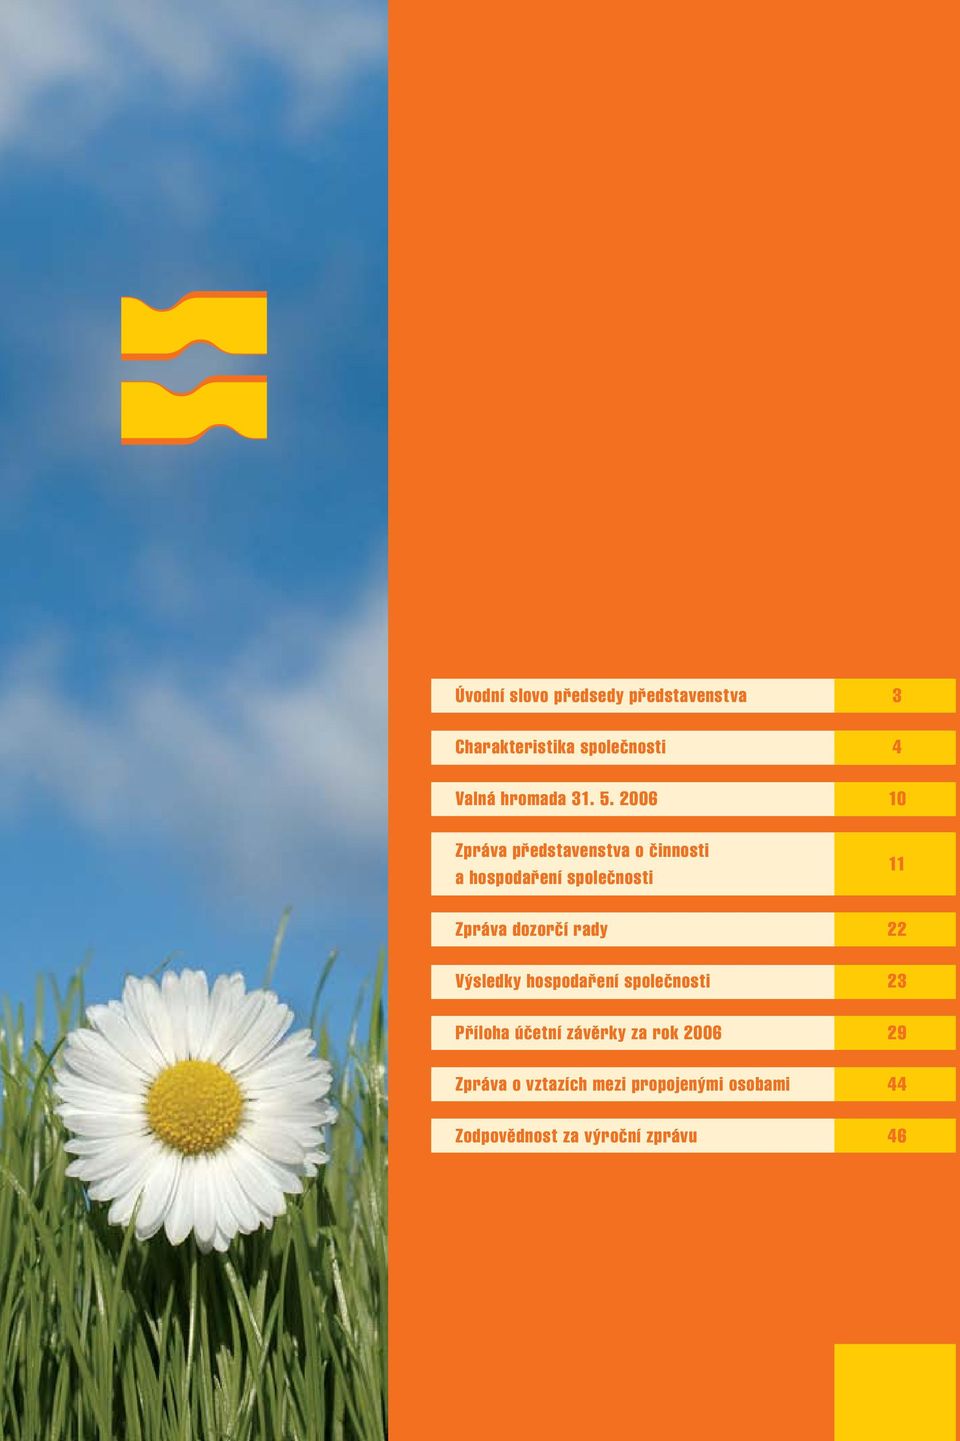 2006 10 Zpráva představenstva o činnosti a hospodaření společnosti 11 Zpráva